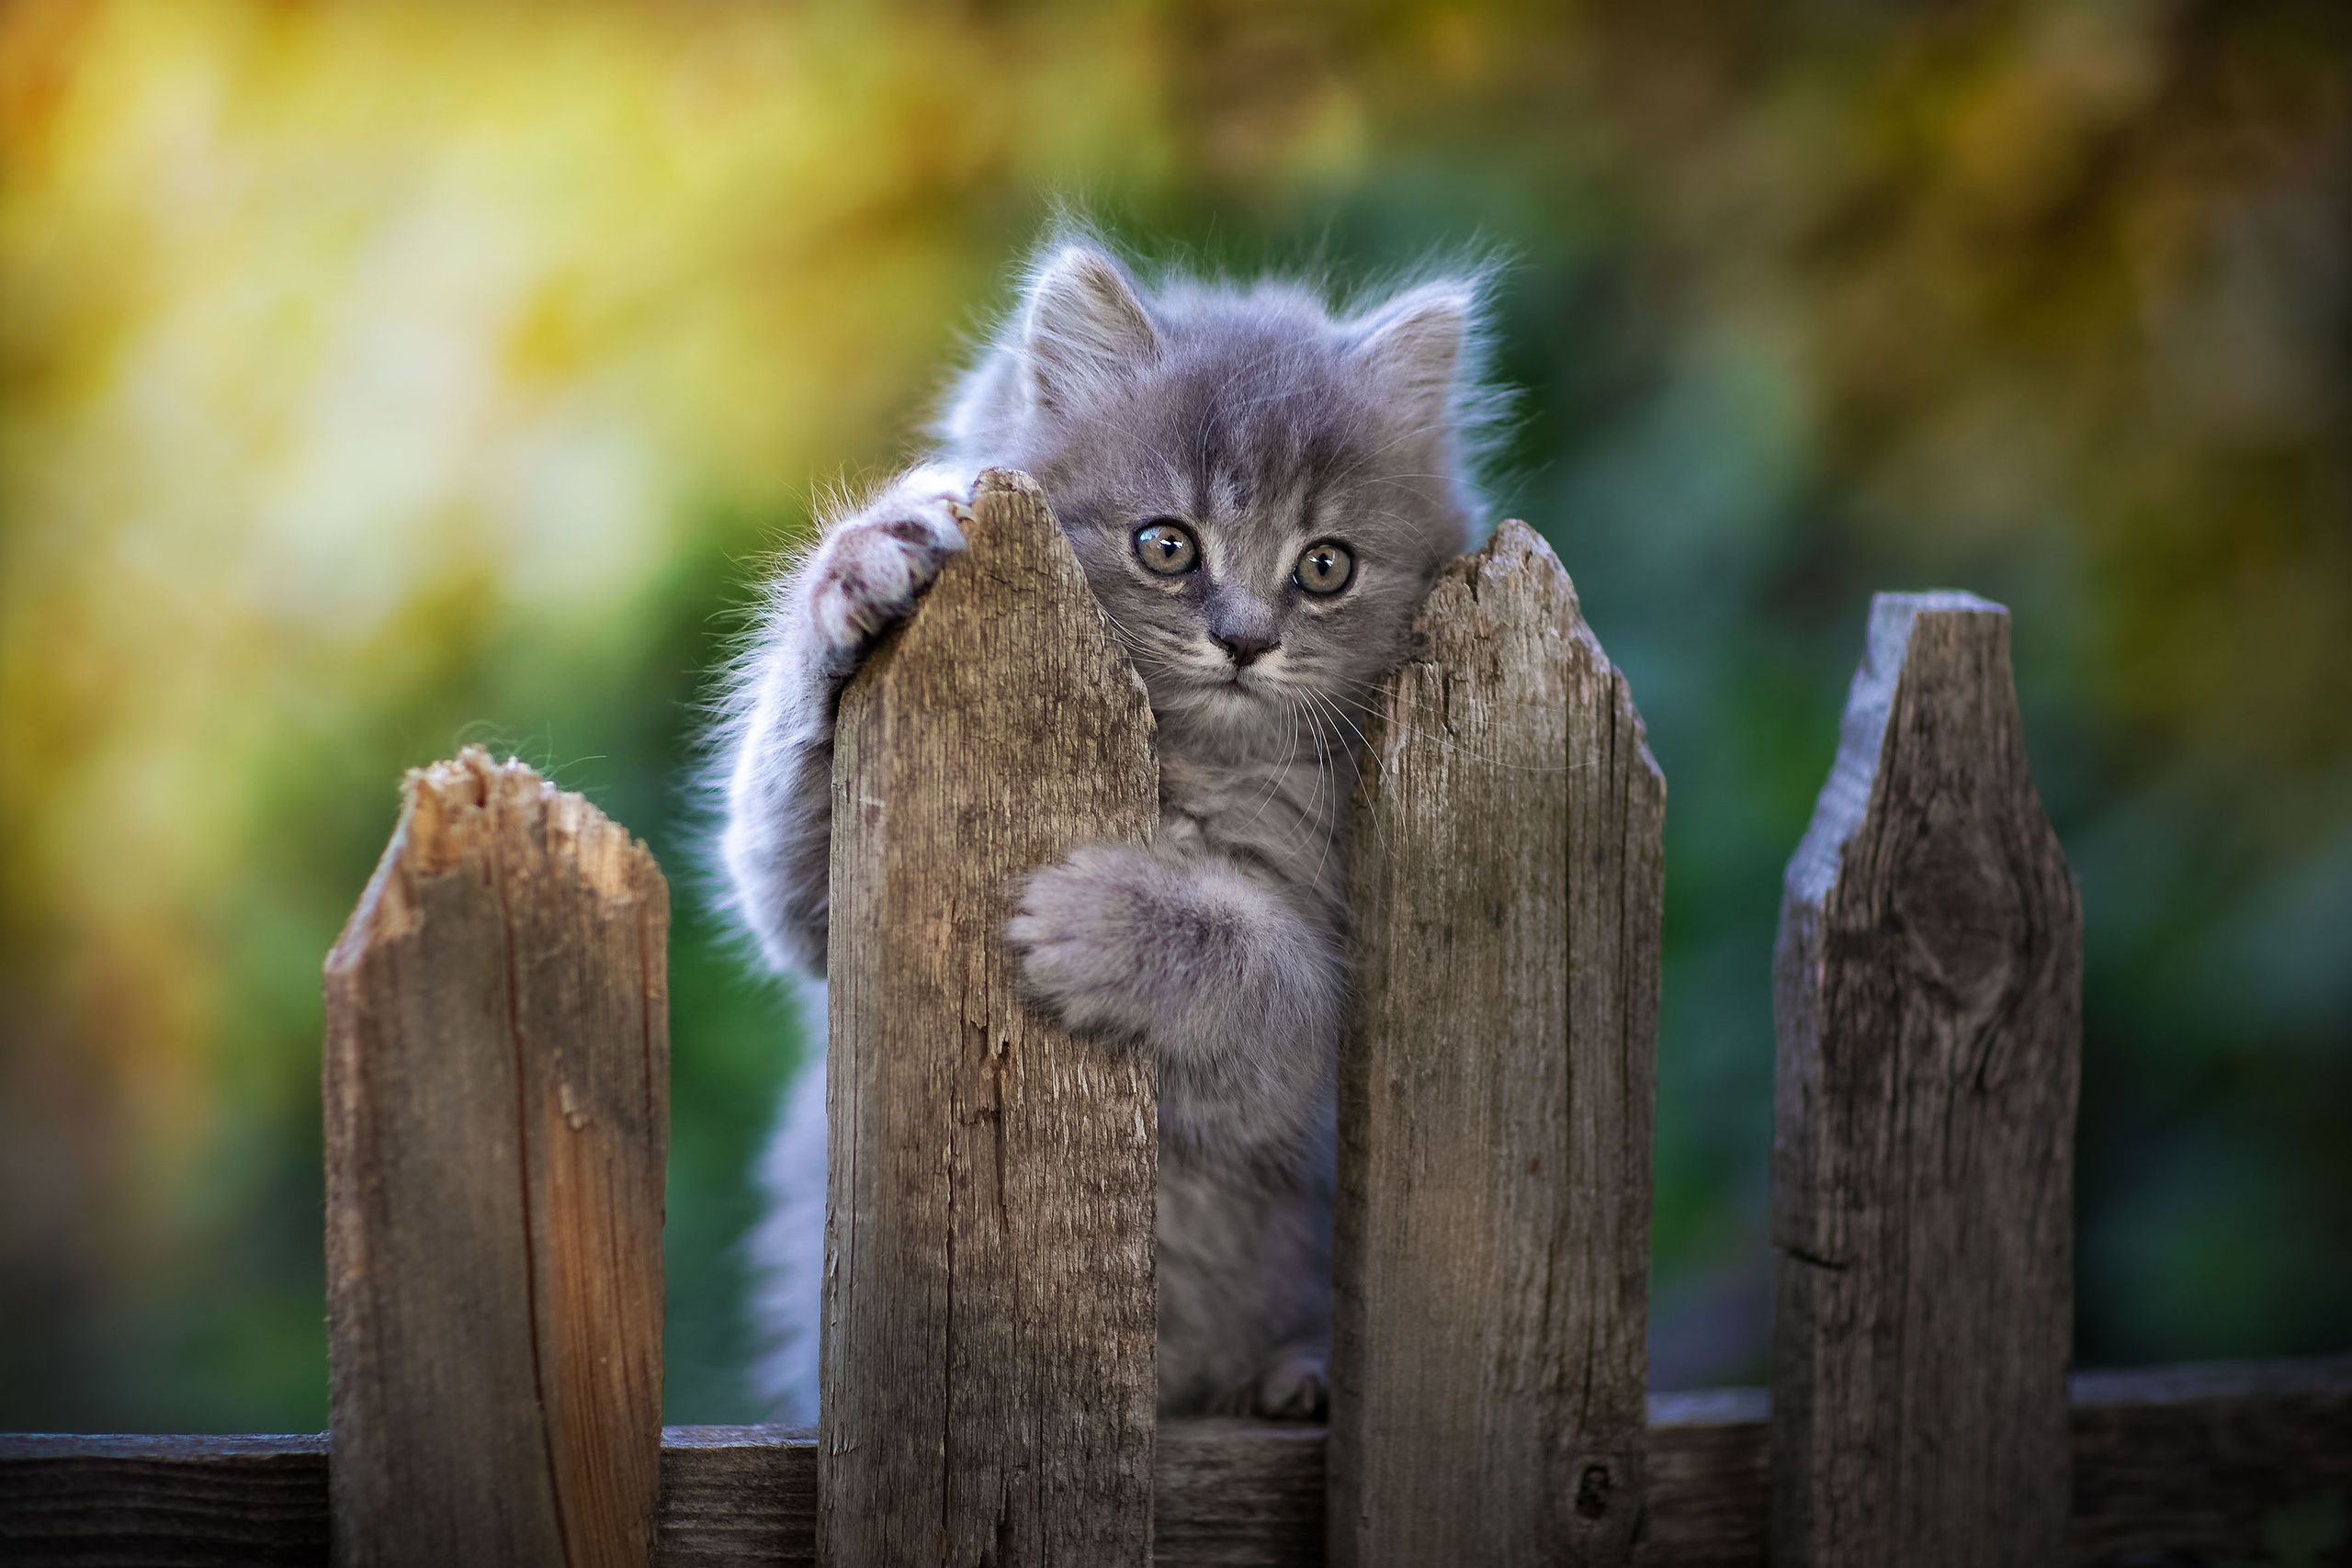 серенький котенок на заборе, смешные домашние животные